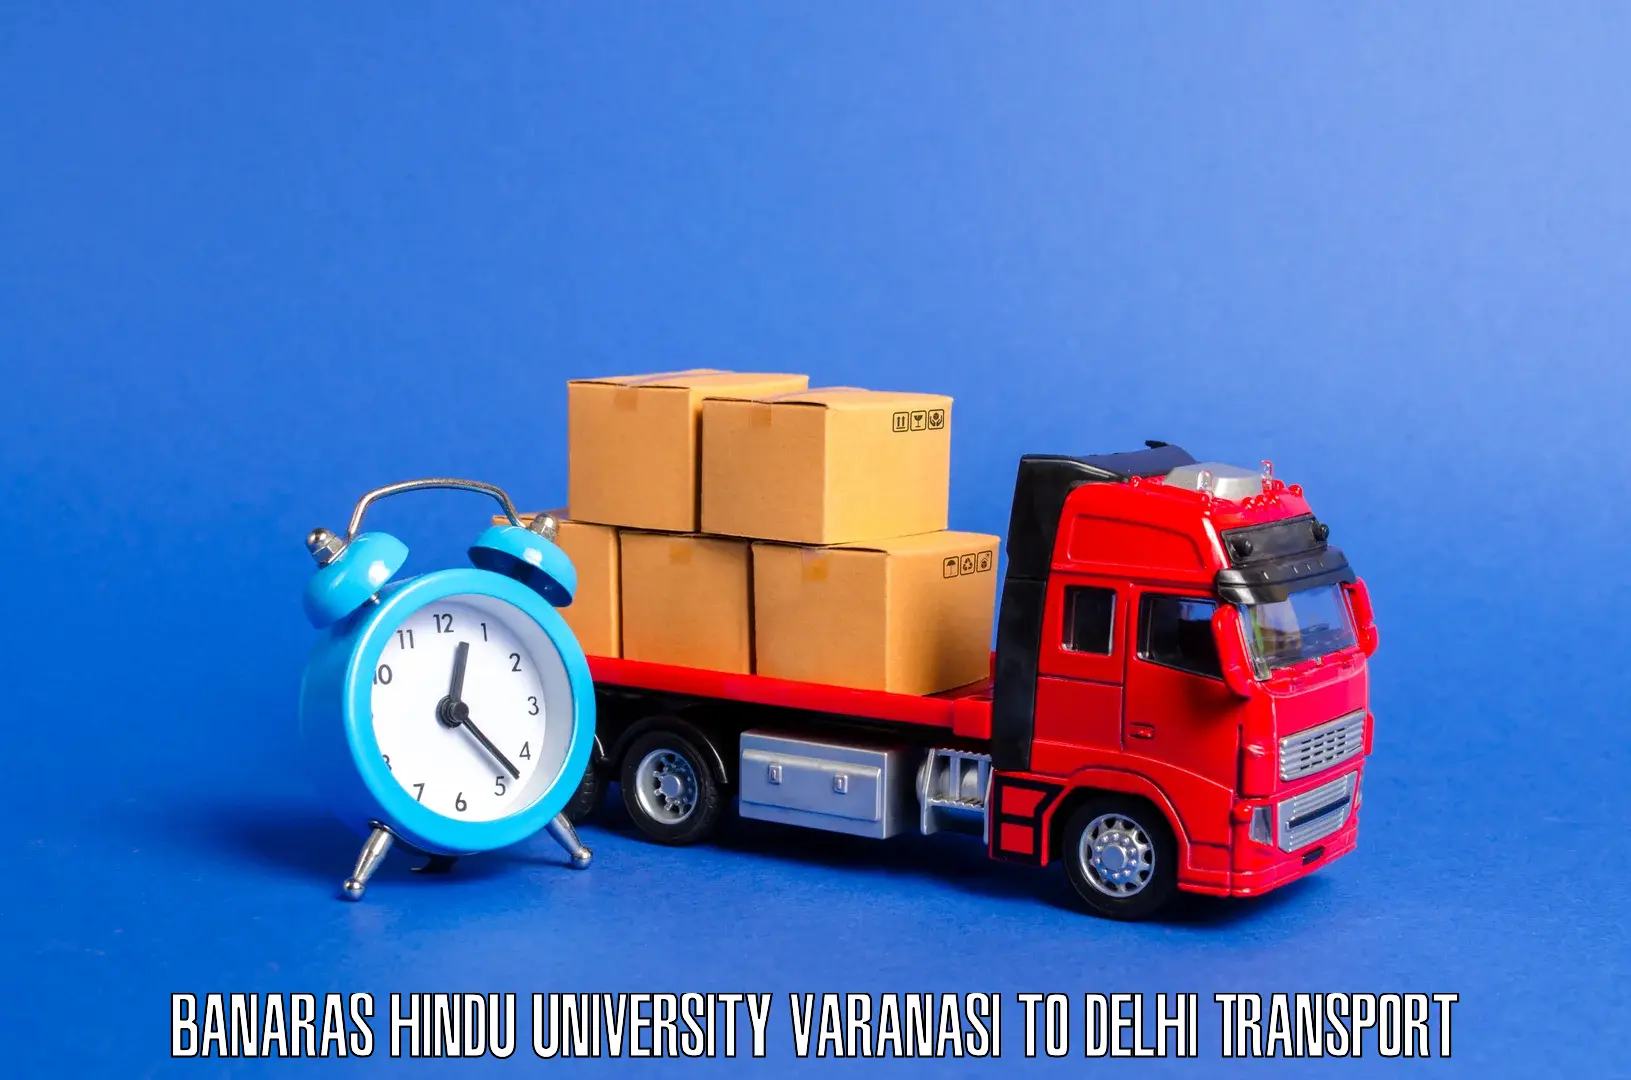 International cargo transportation services Banaras Hindu University Varanasi to NCR